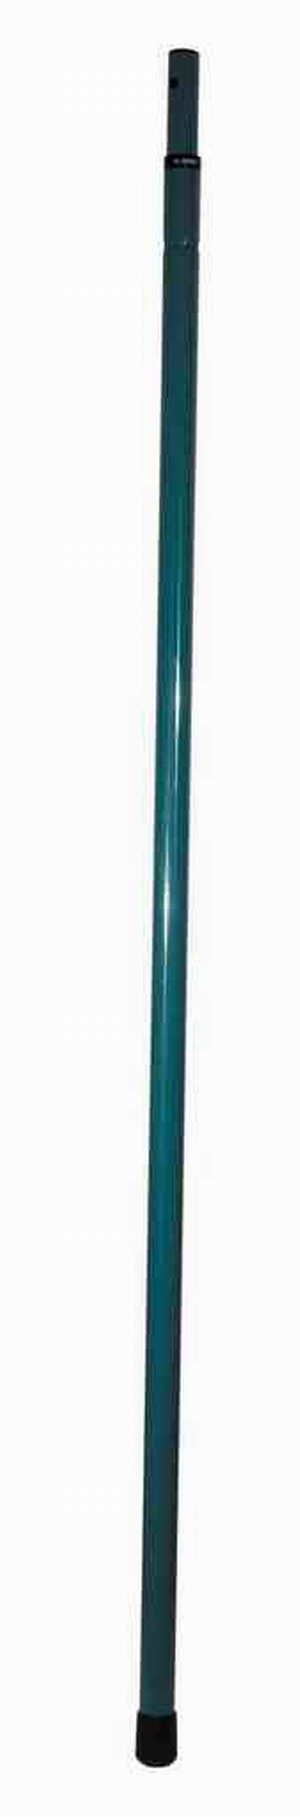 Ручка телескопическая RACO стальная  1,5-2,4м, для 4218-53/372C, 4218-53/376С                                           